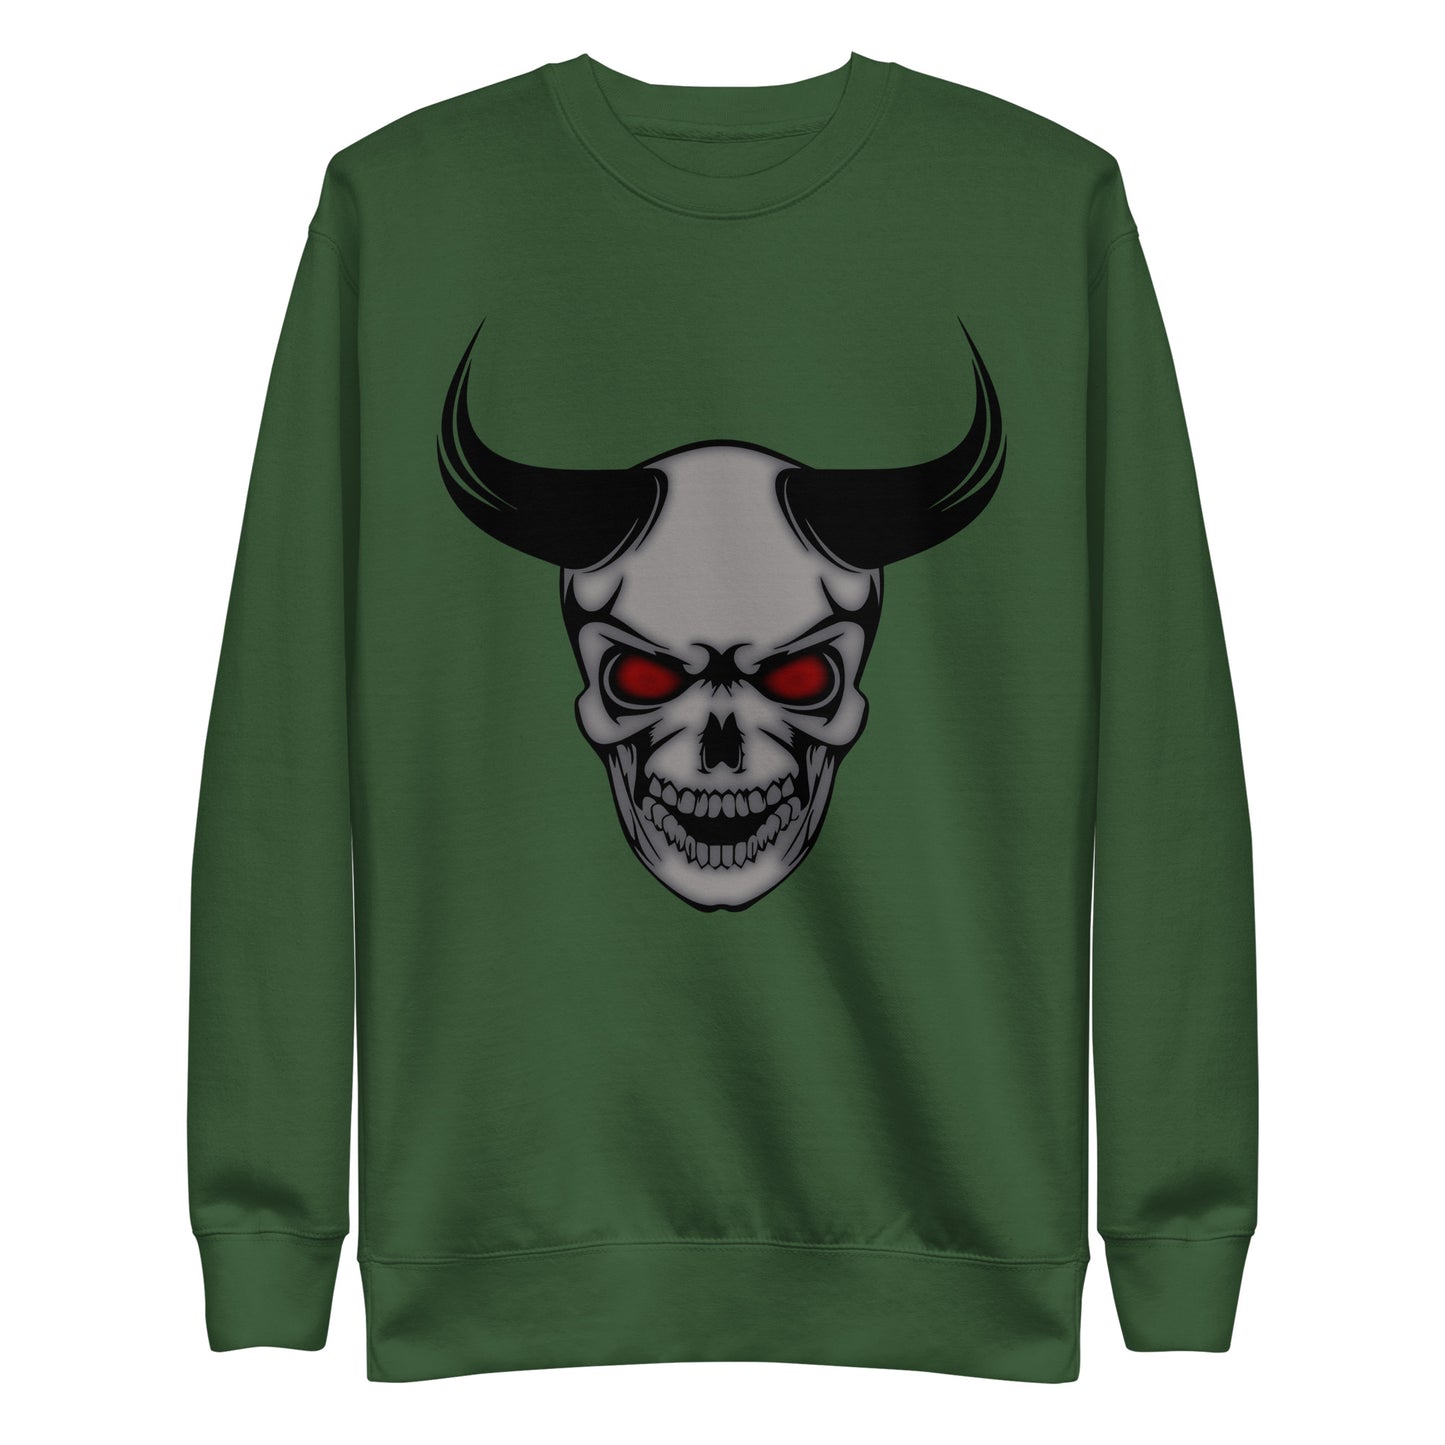 Devil’s Advocate - Unisex Premium Sweatshirt